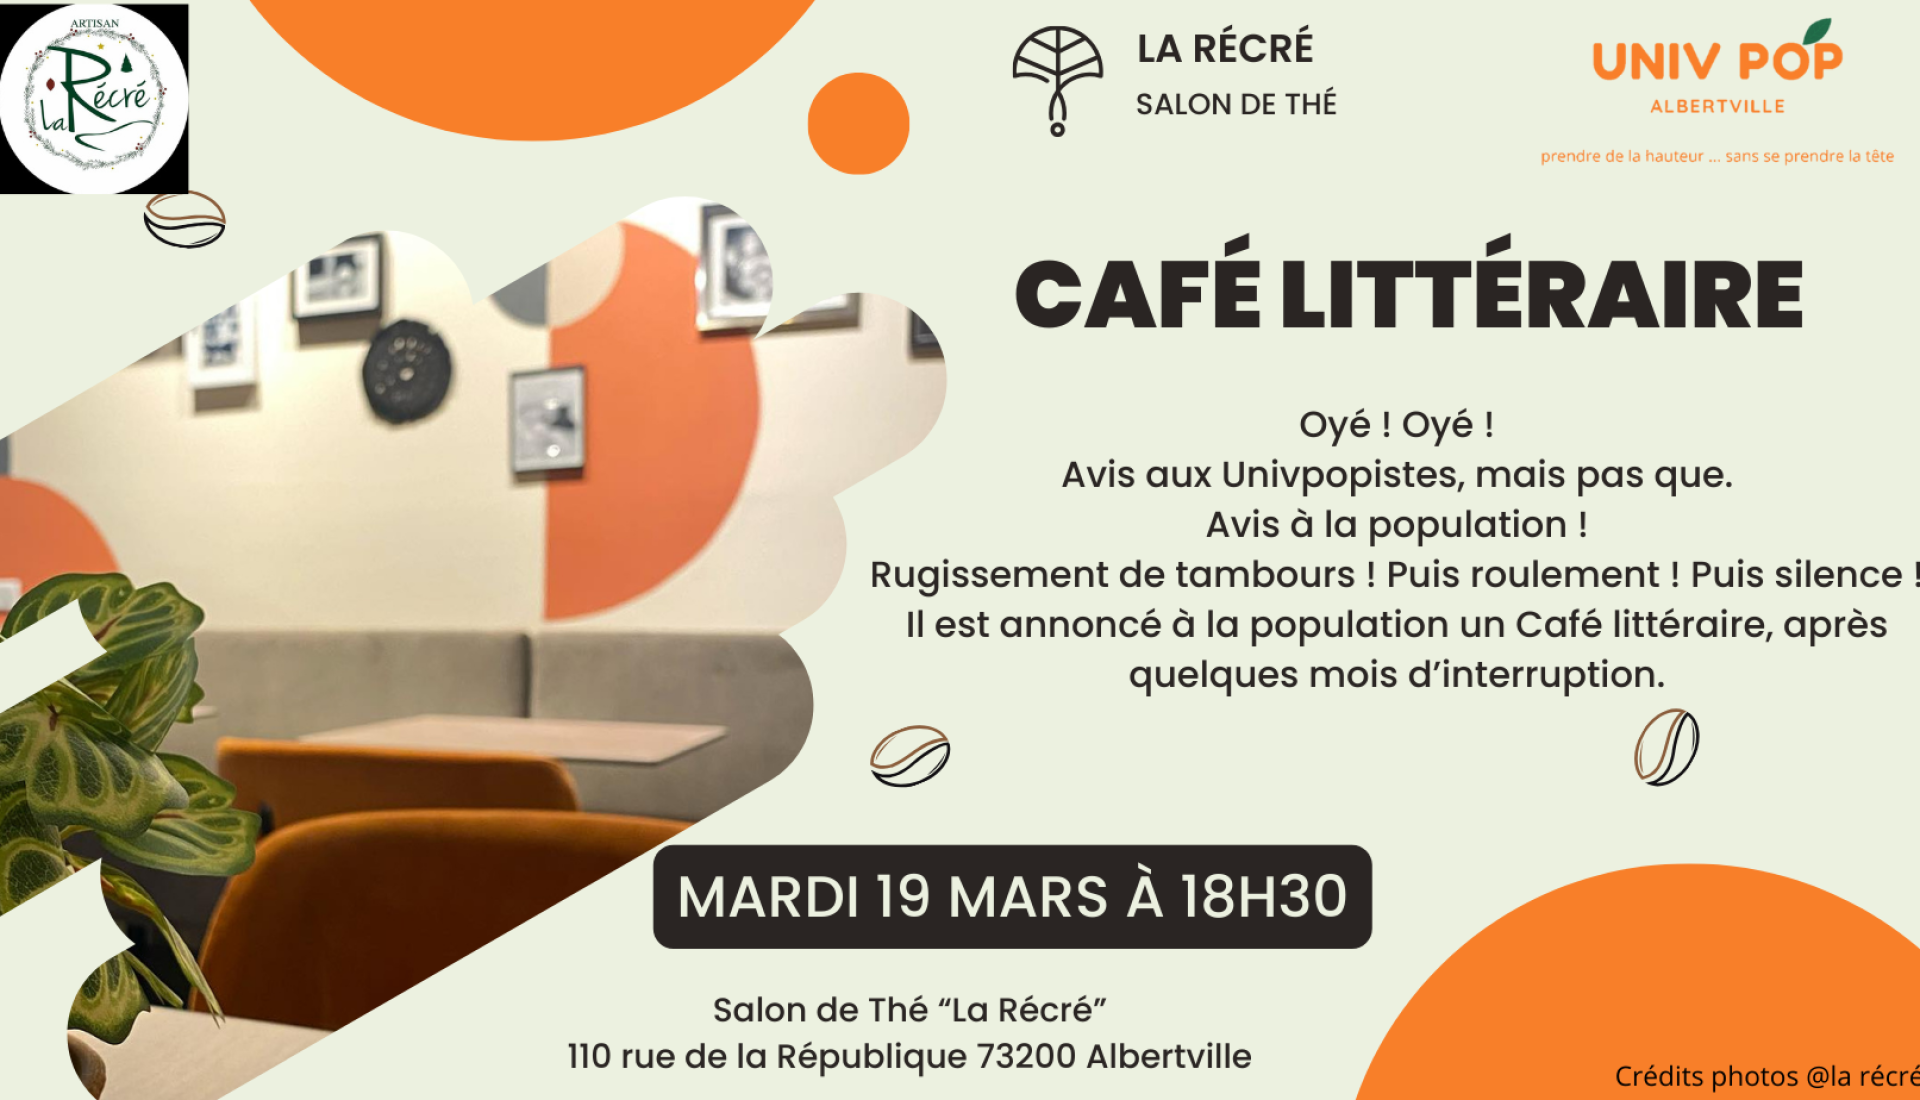 LE CAFÉ LITTÉRAIRE D'AMBROISE